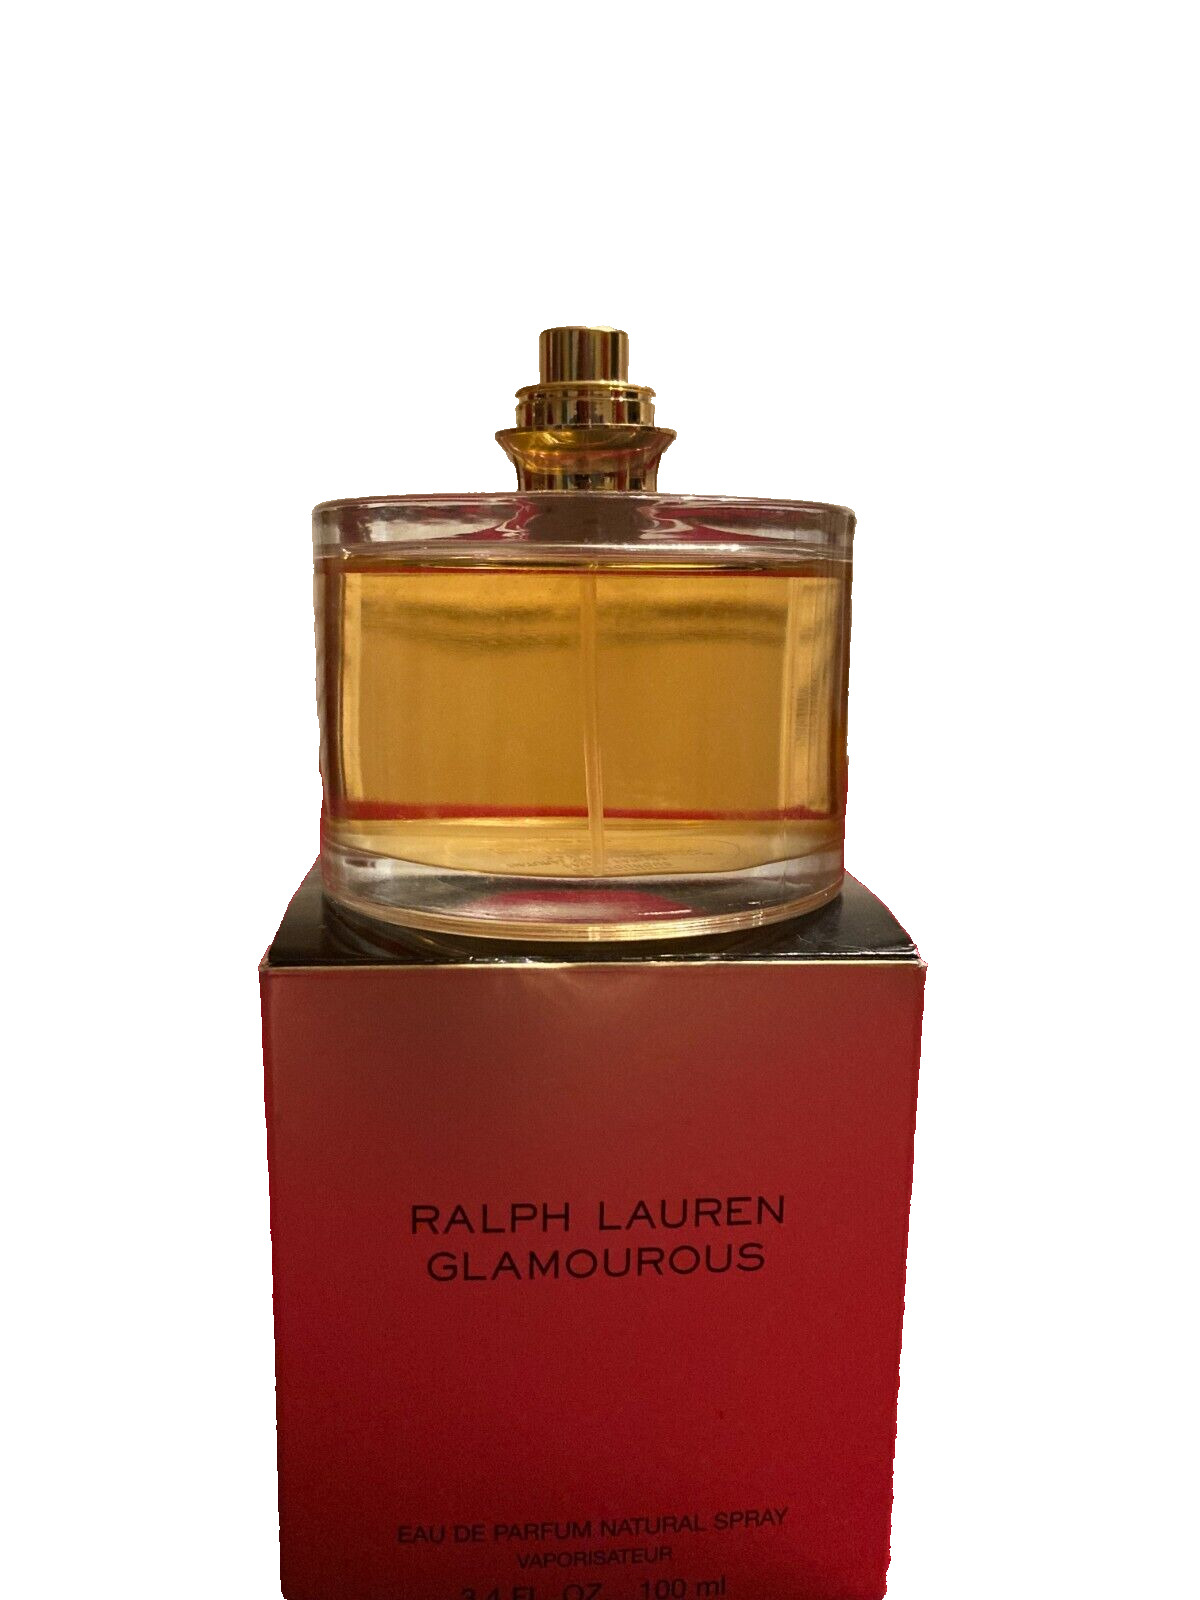 Ralph Lauren Glamourous Women Perfume 3.4 Oz Eau de Parfum 97% full No Cap